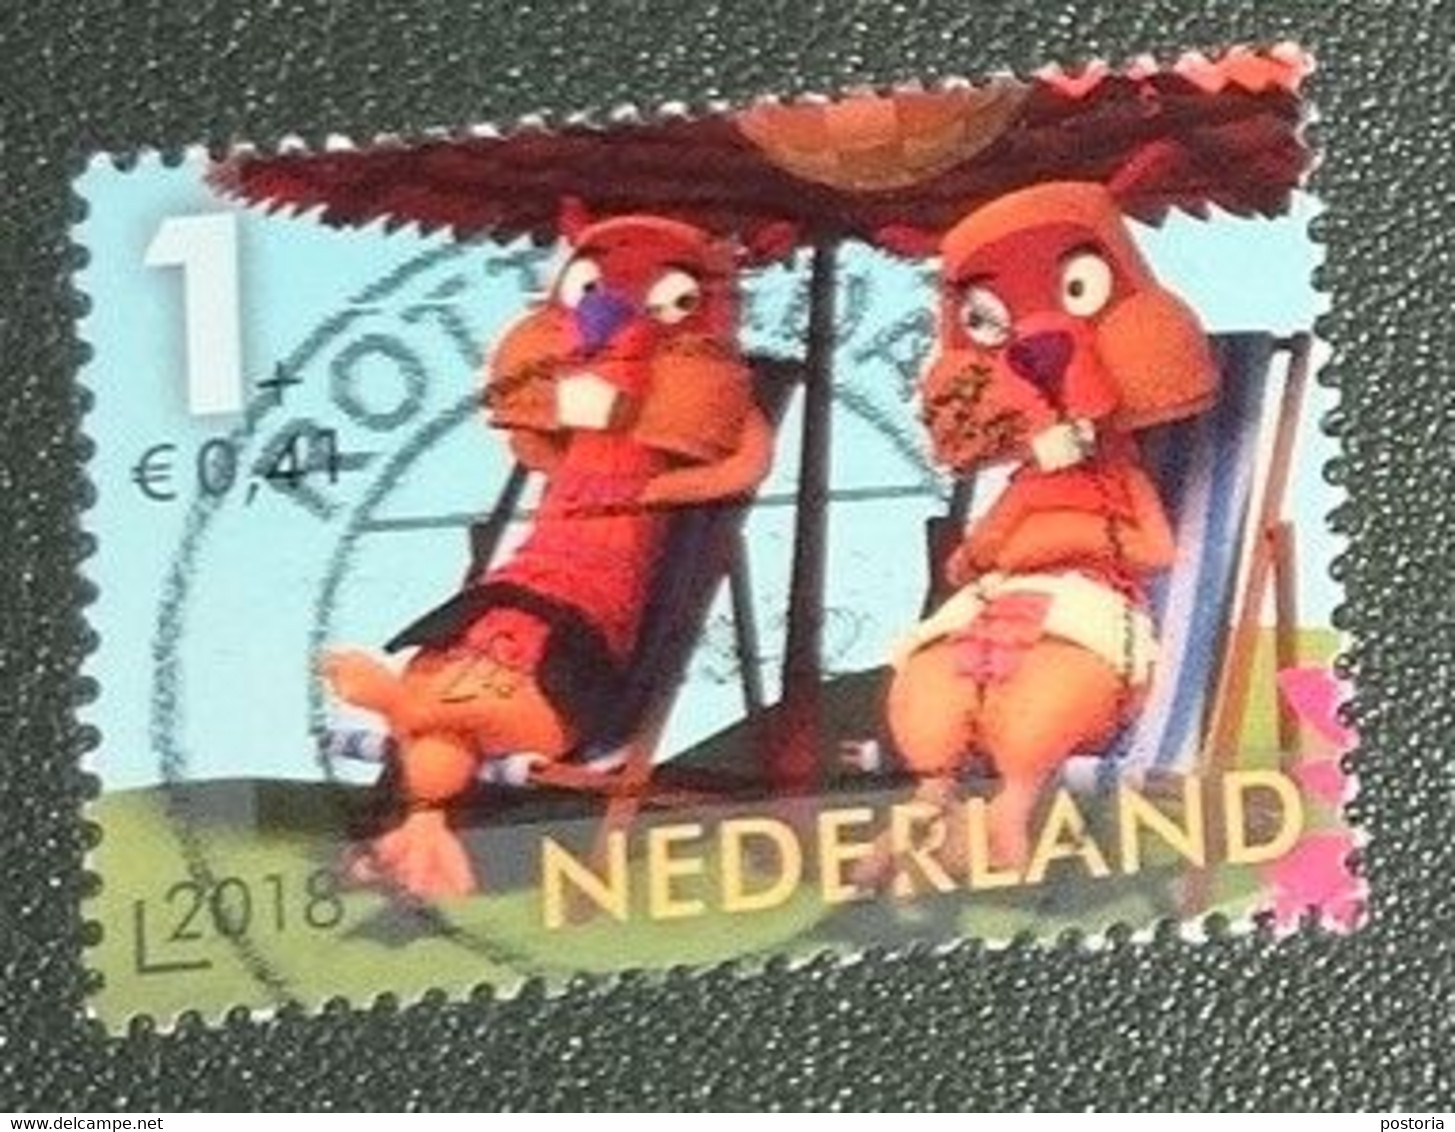 Nederland - NVPH - 3694x - 2018 - Gebruikt - Cancelled - Fabeltjeskrant - Ed En Willem Bever - Used Stamps